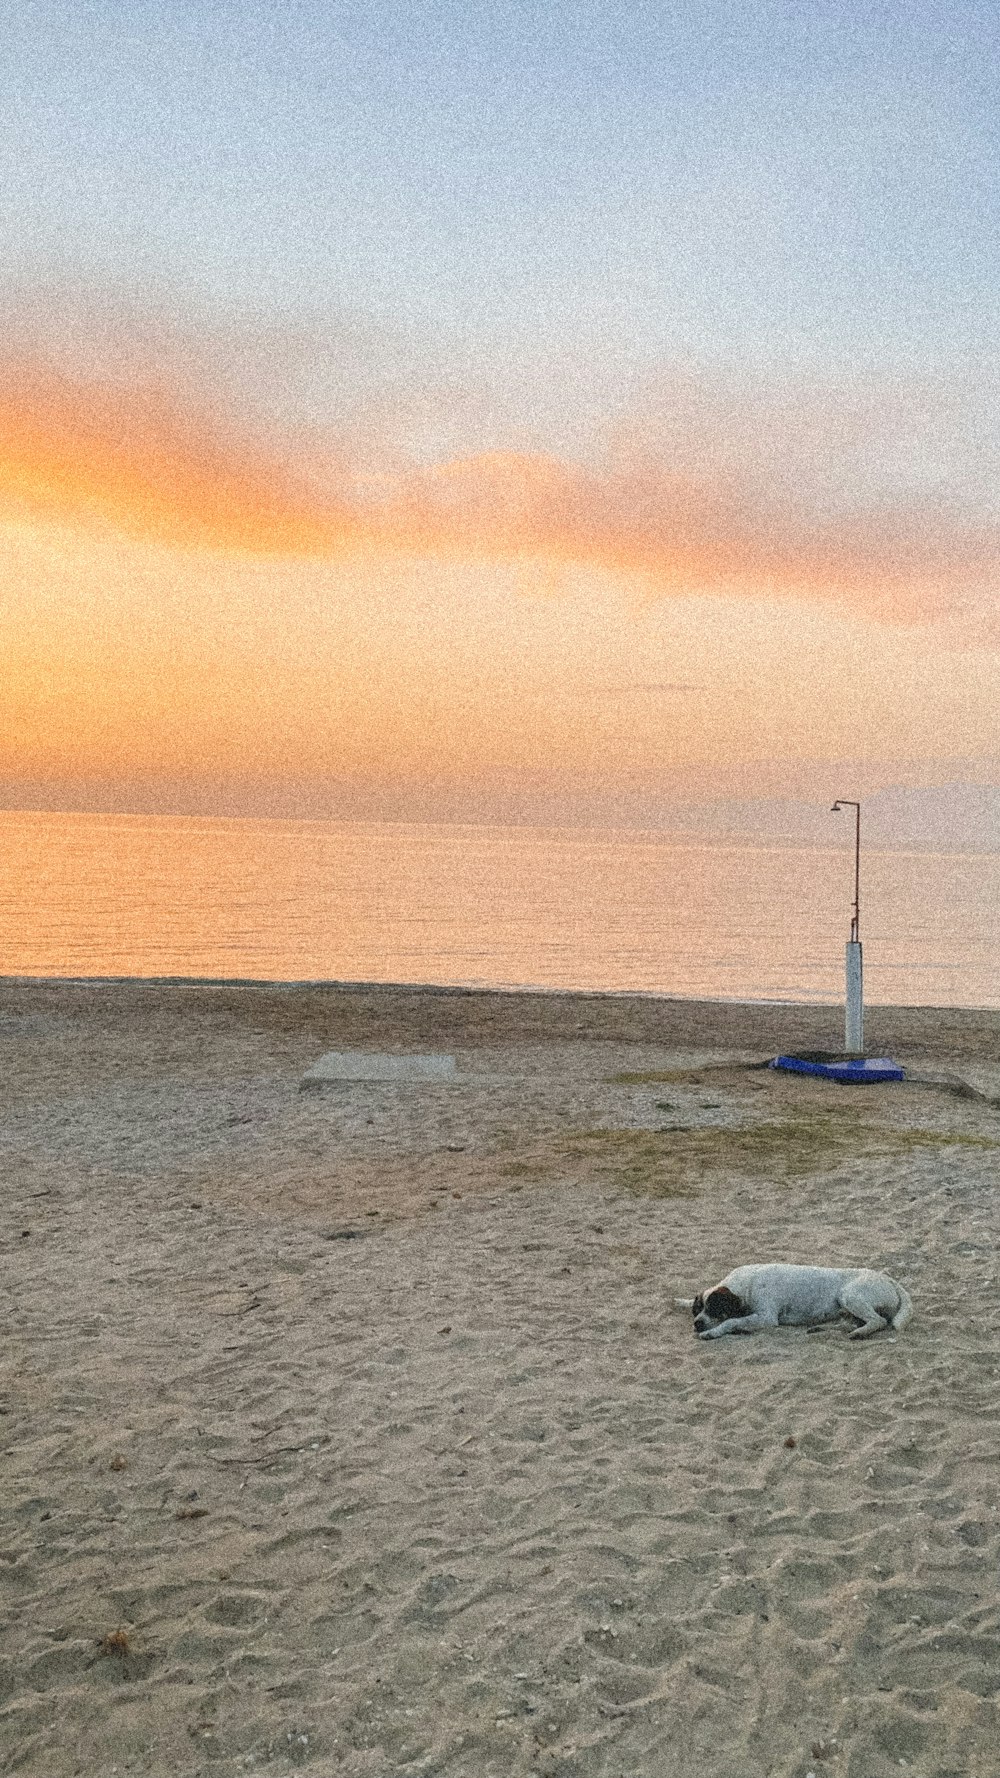 a dog lying on the beach